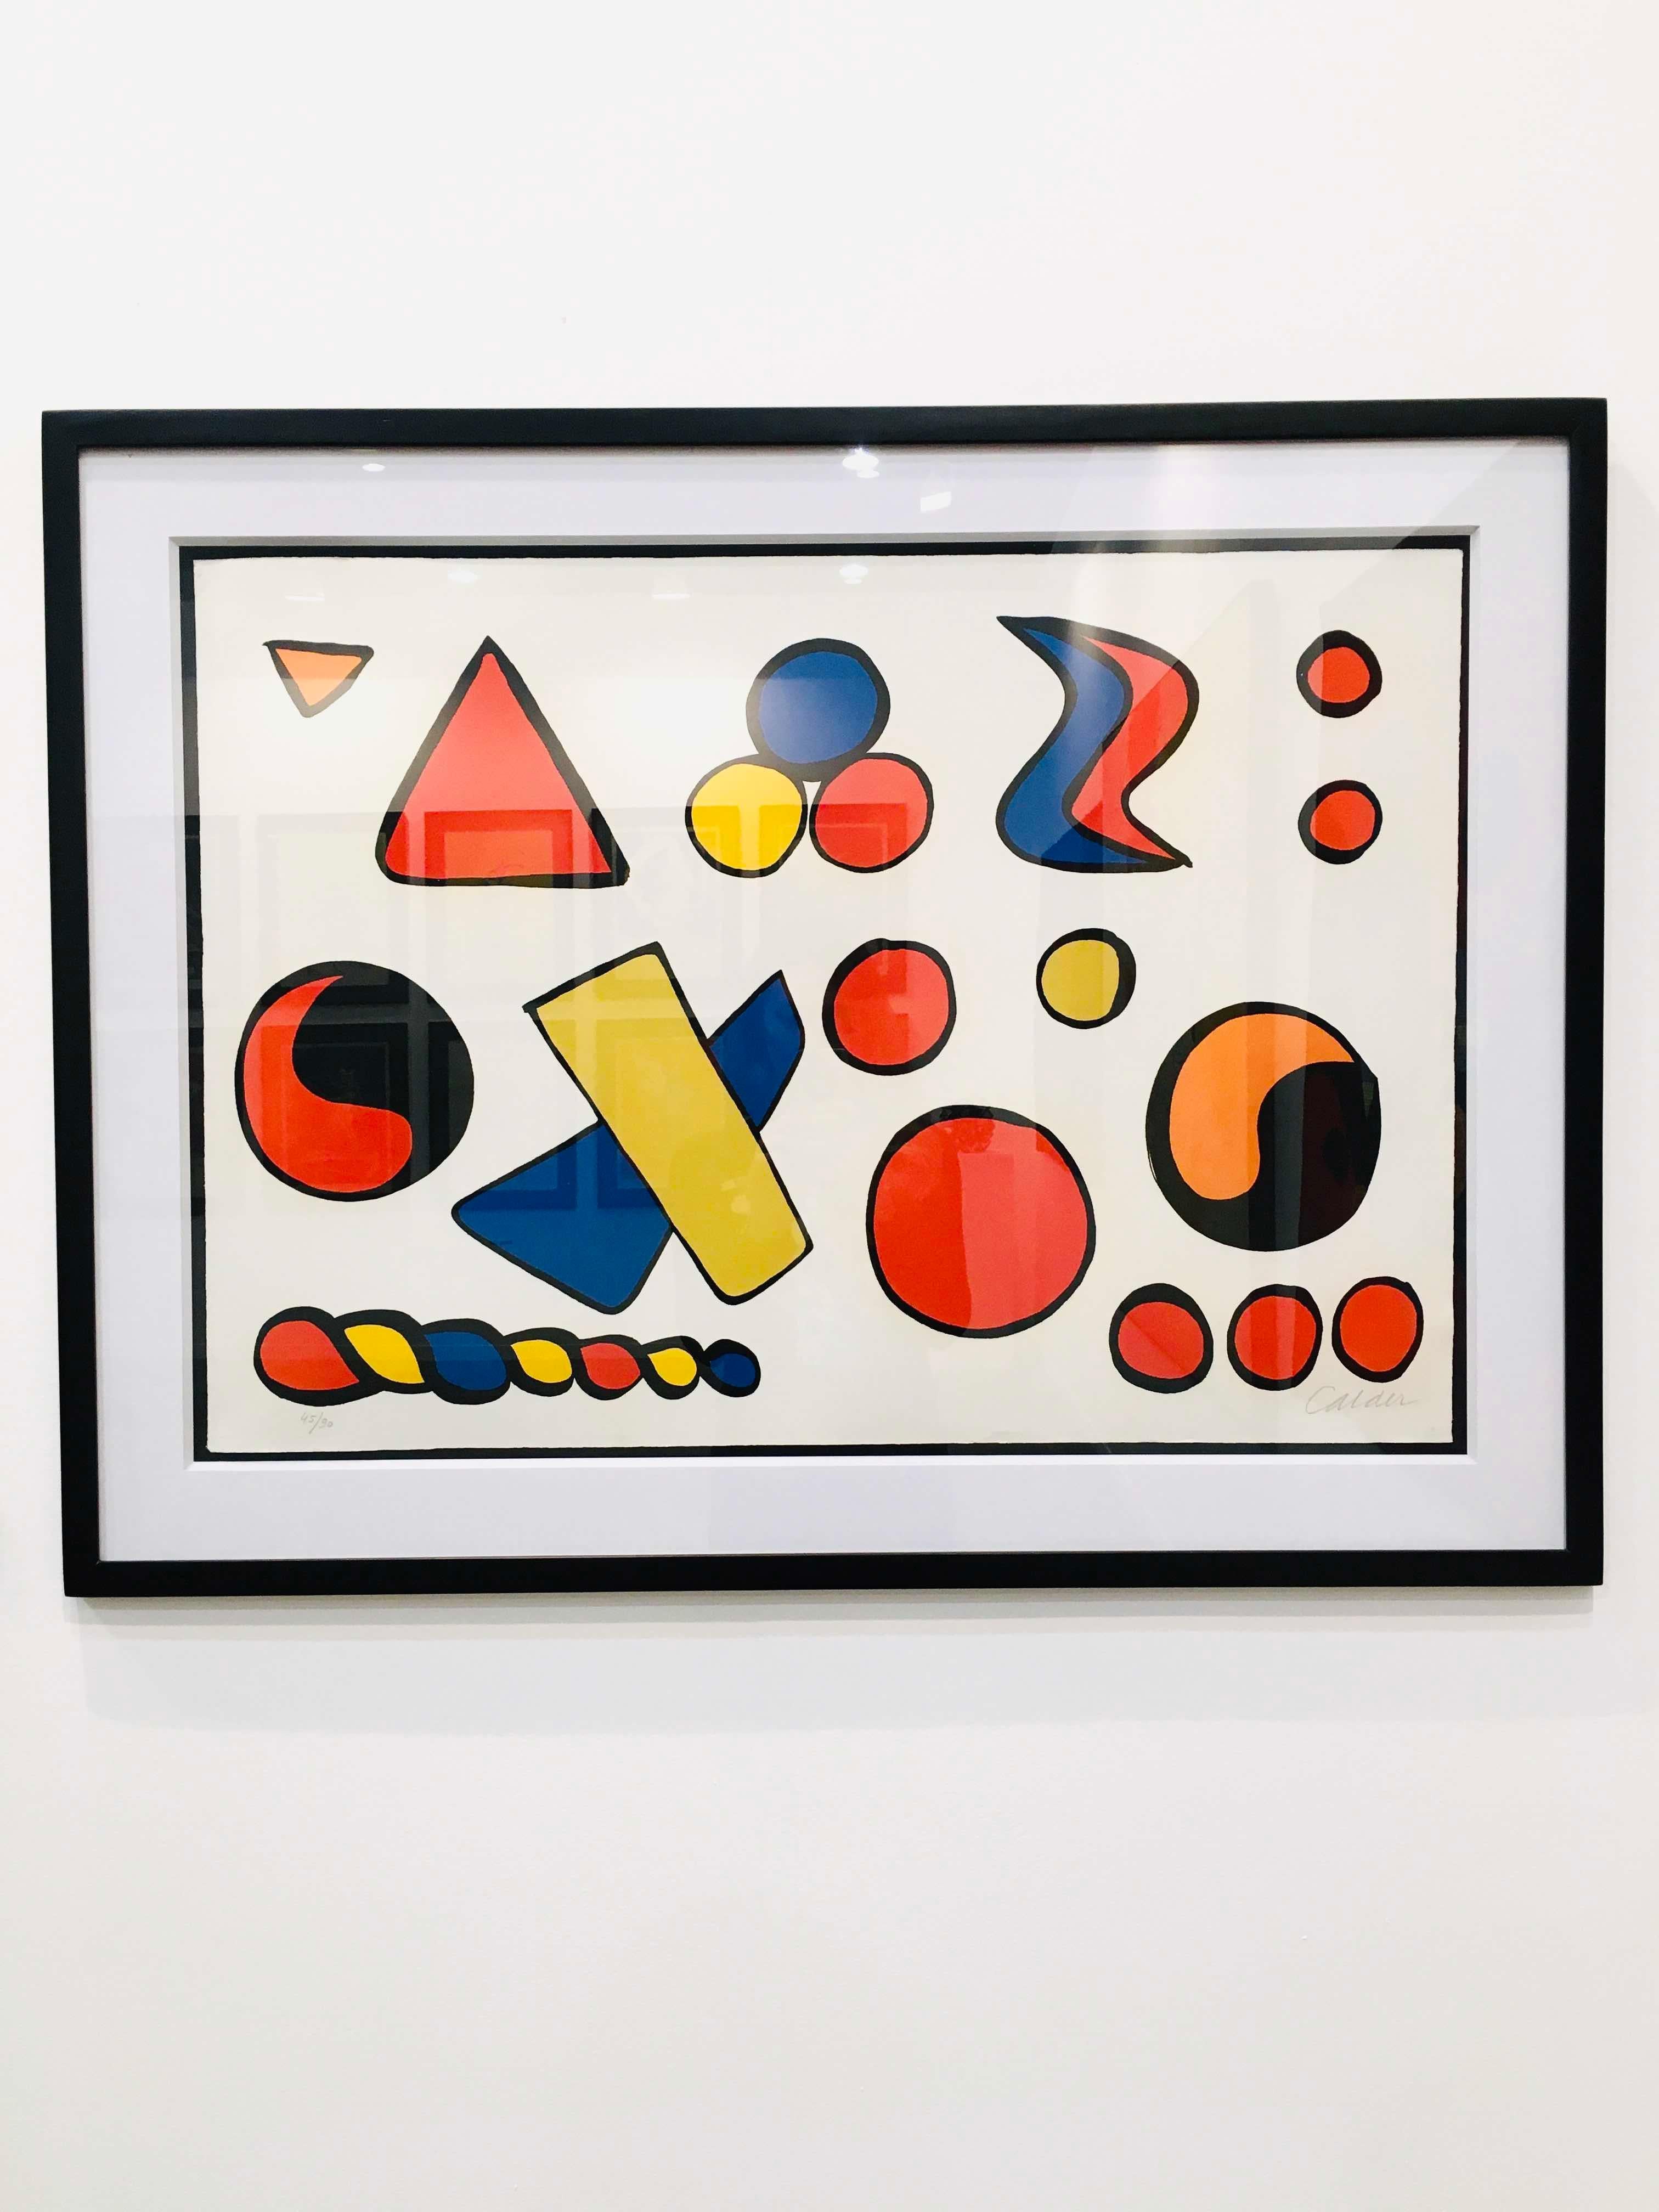 Composition aux formes géométriques - Print by Alexander Calder